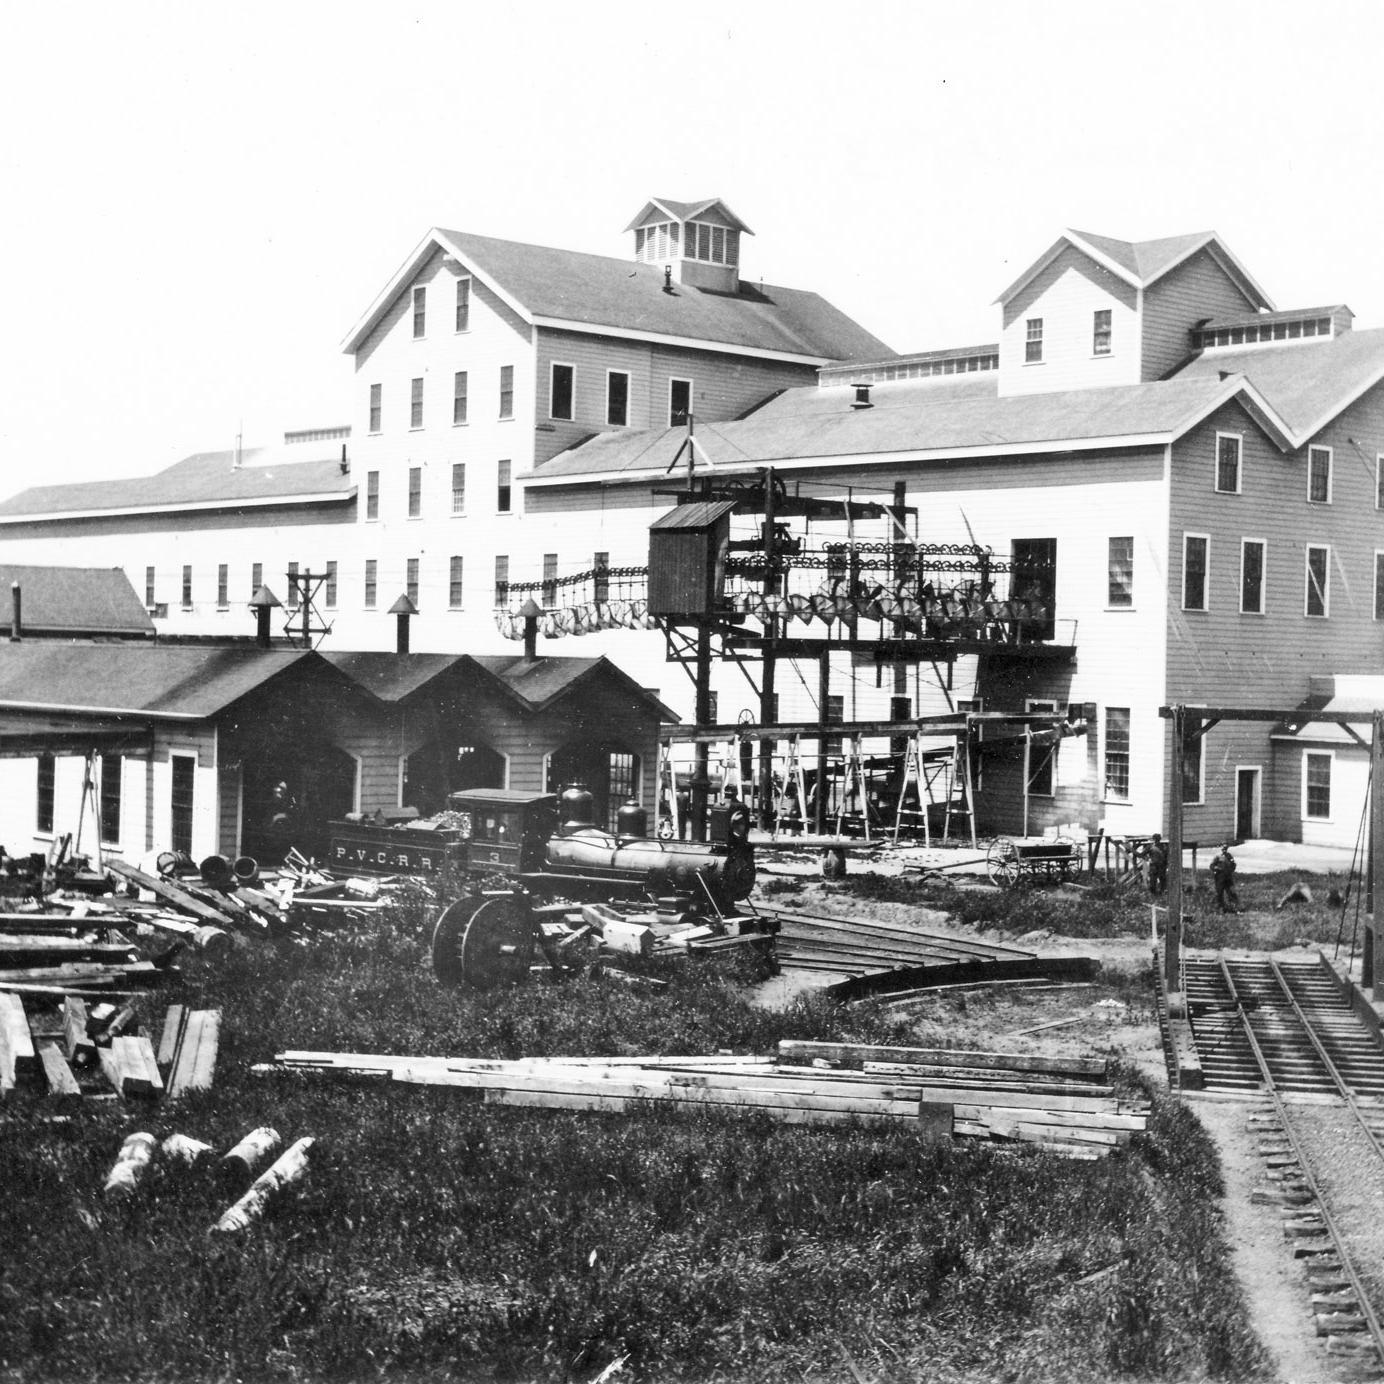 Western Sugar Beet Company Refinery, circa 1895.